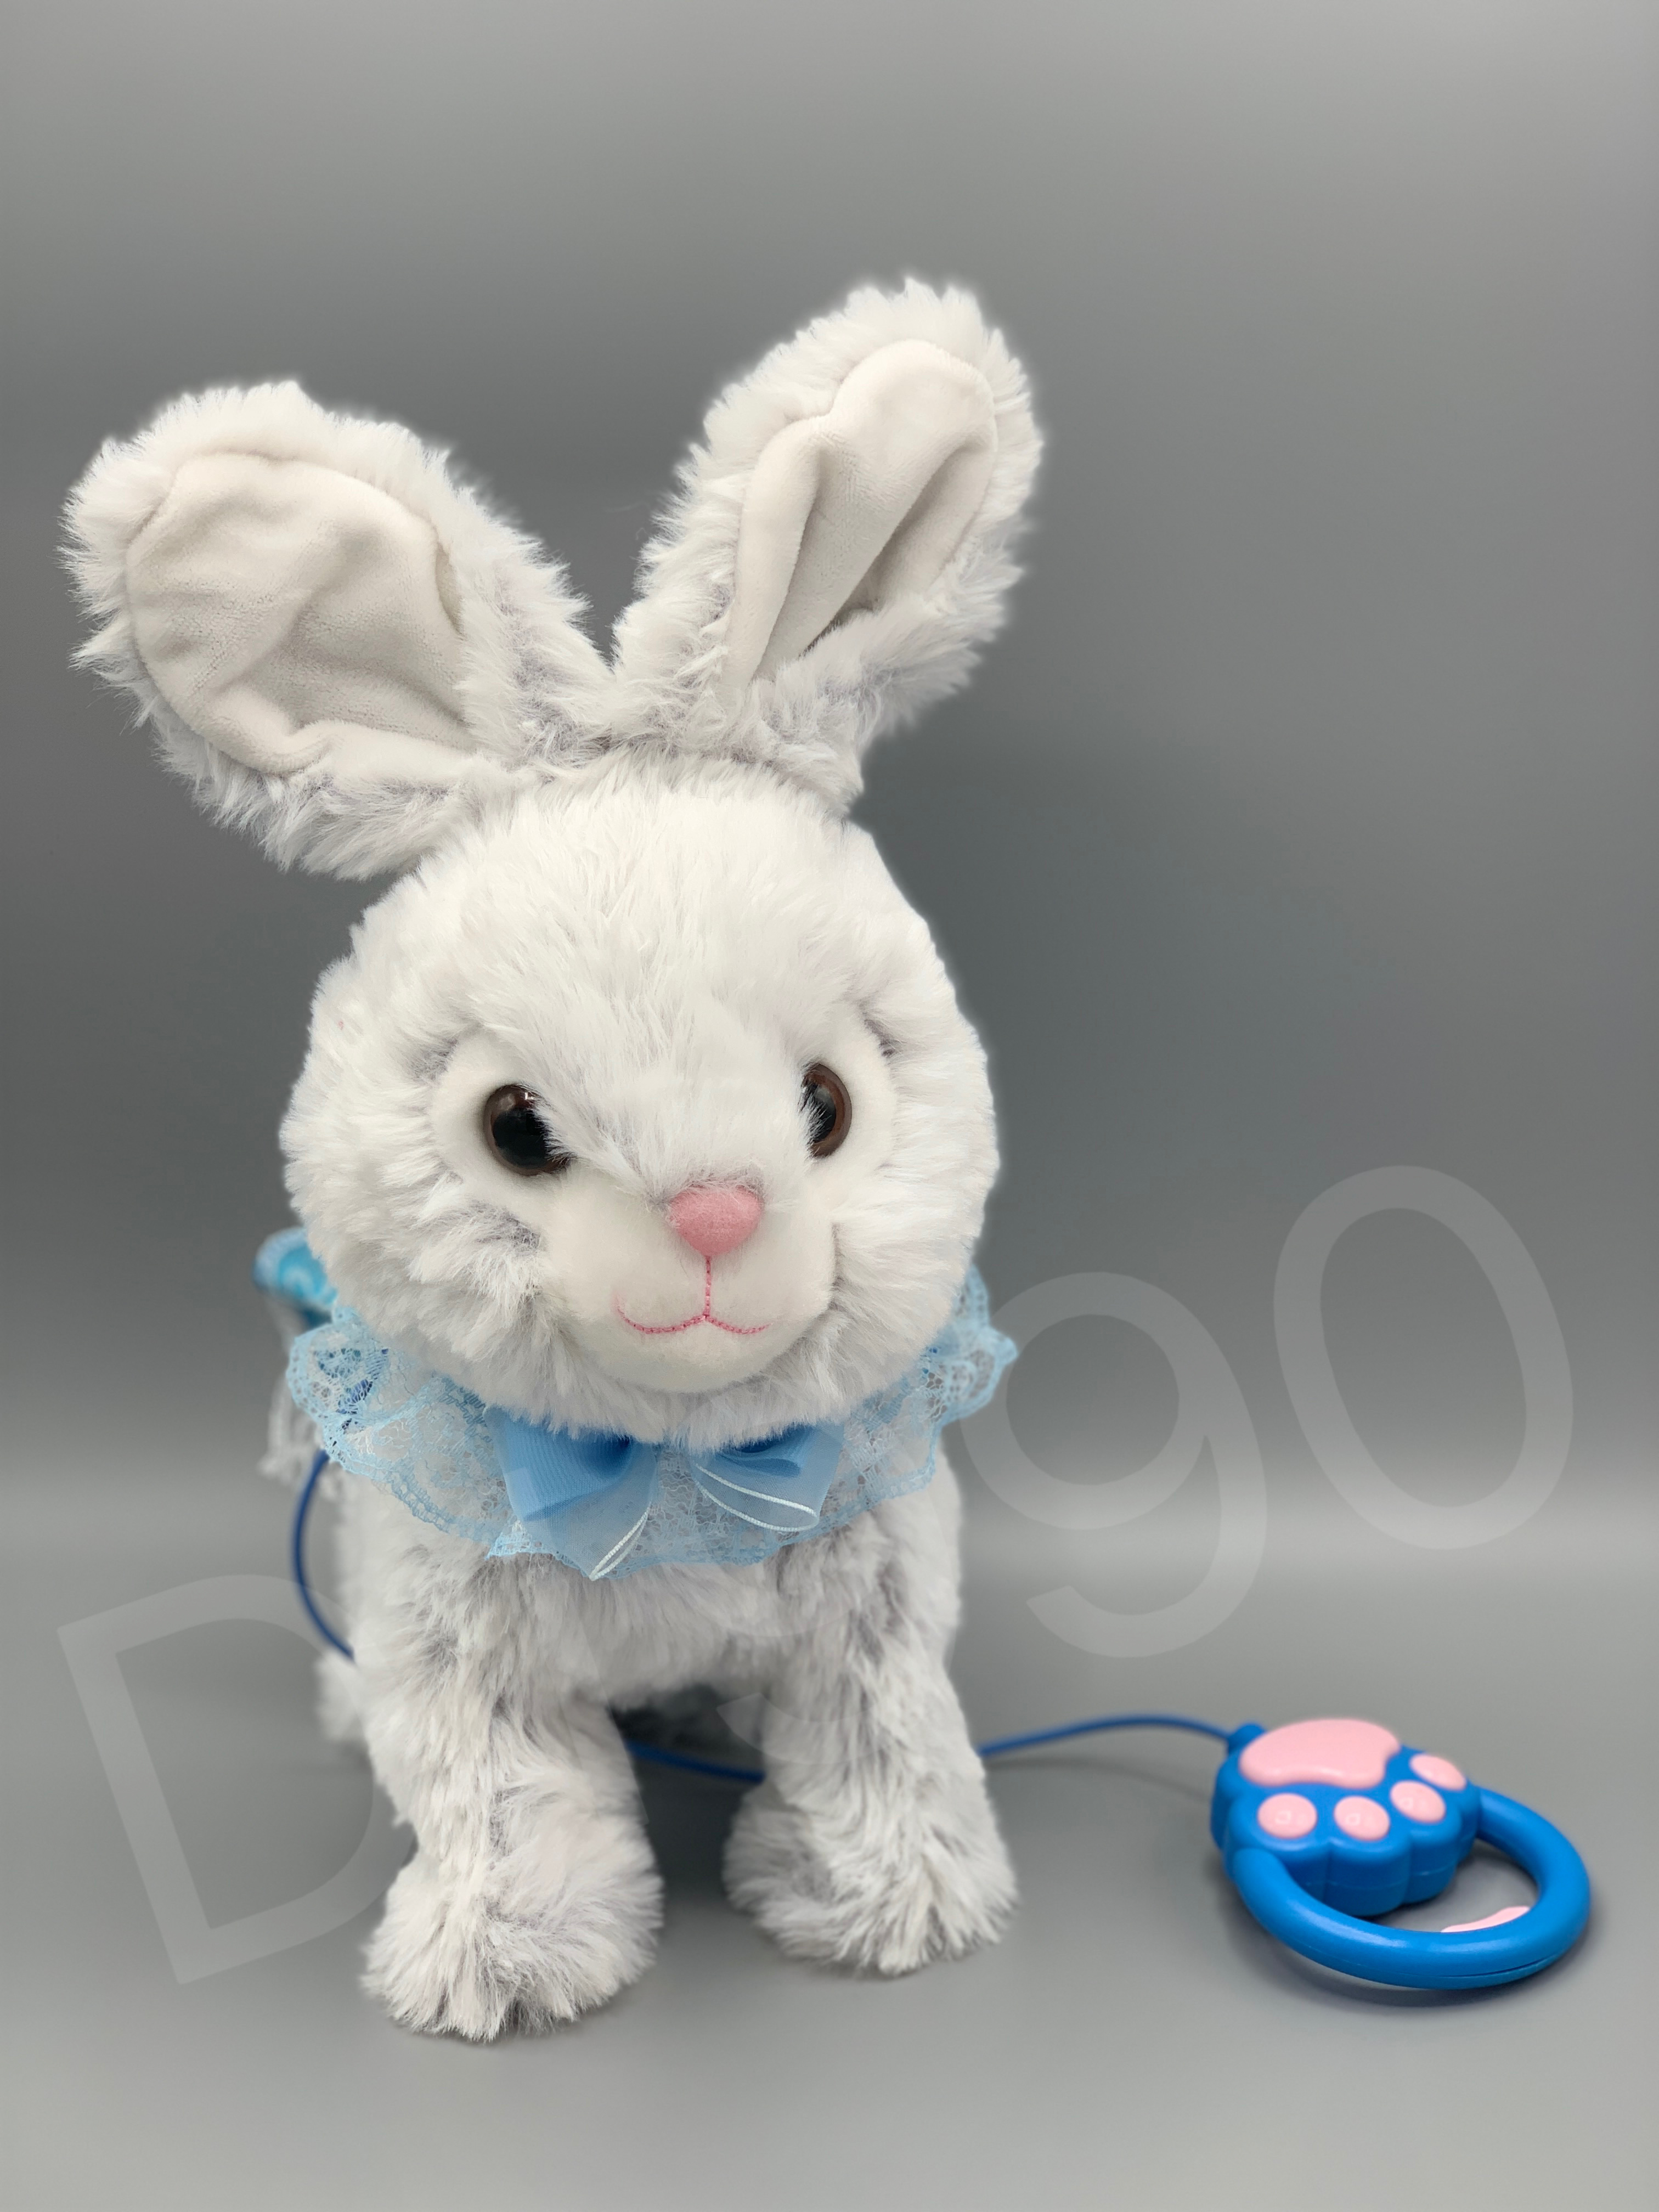 毛绒电动玩具兔子会蹦会走会唱歌能录音的玩具公仔兔子外贸跨境批发图